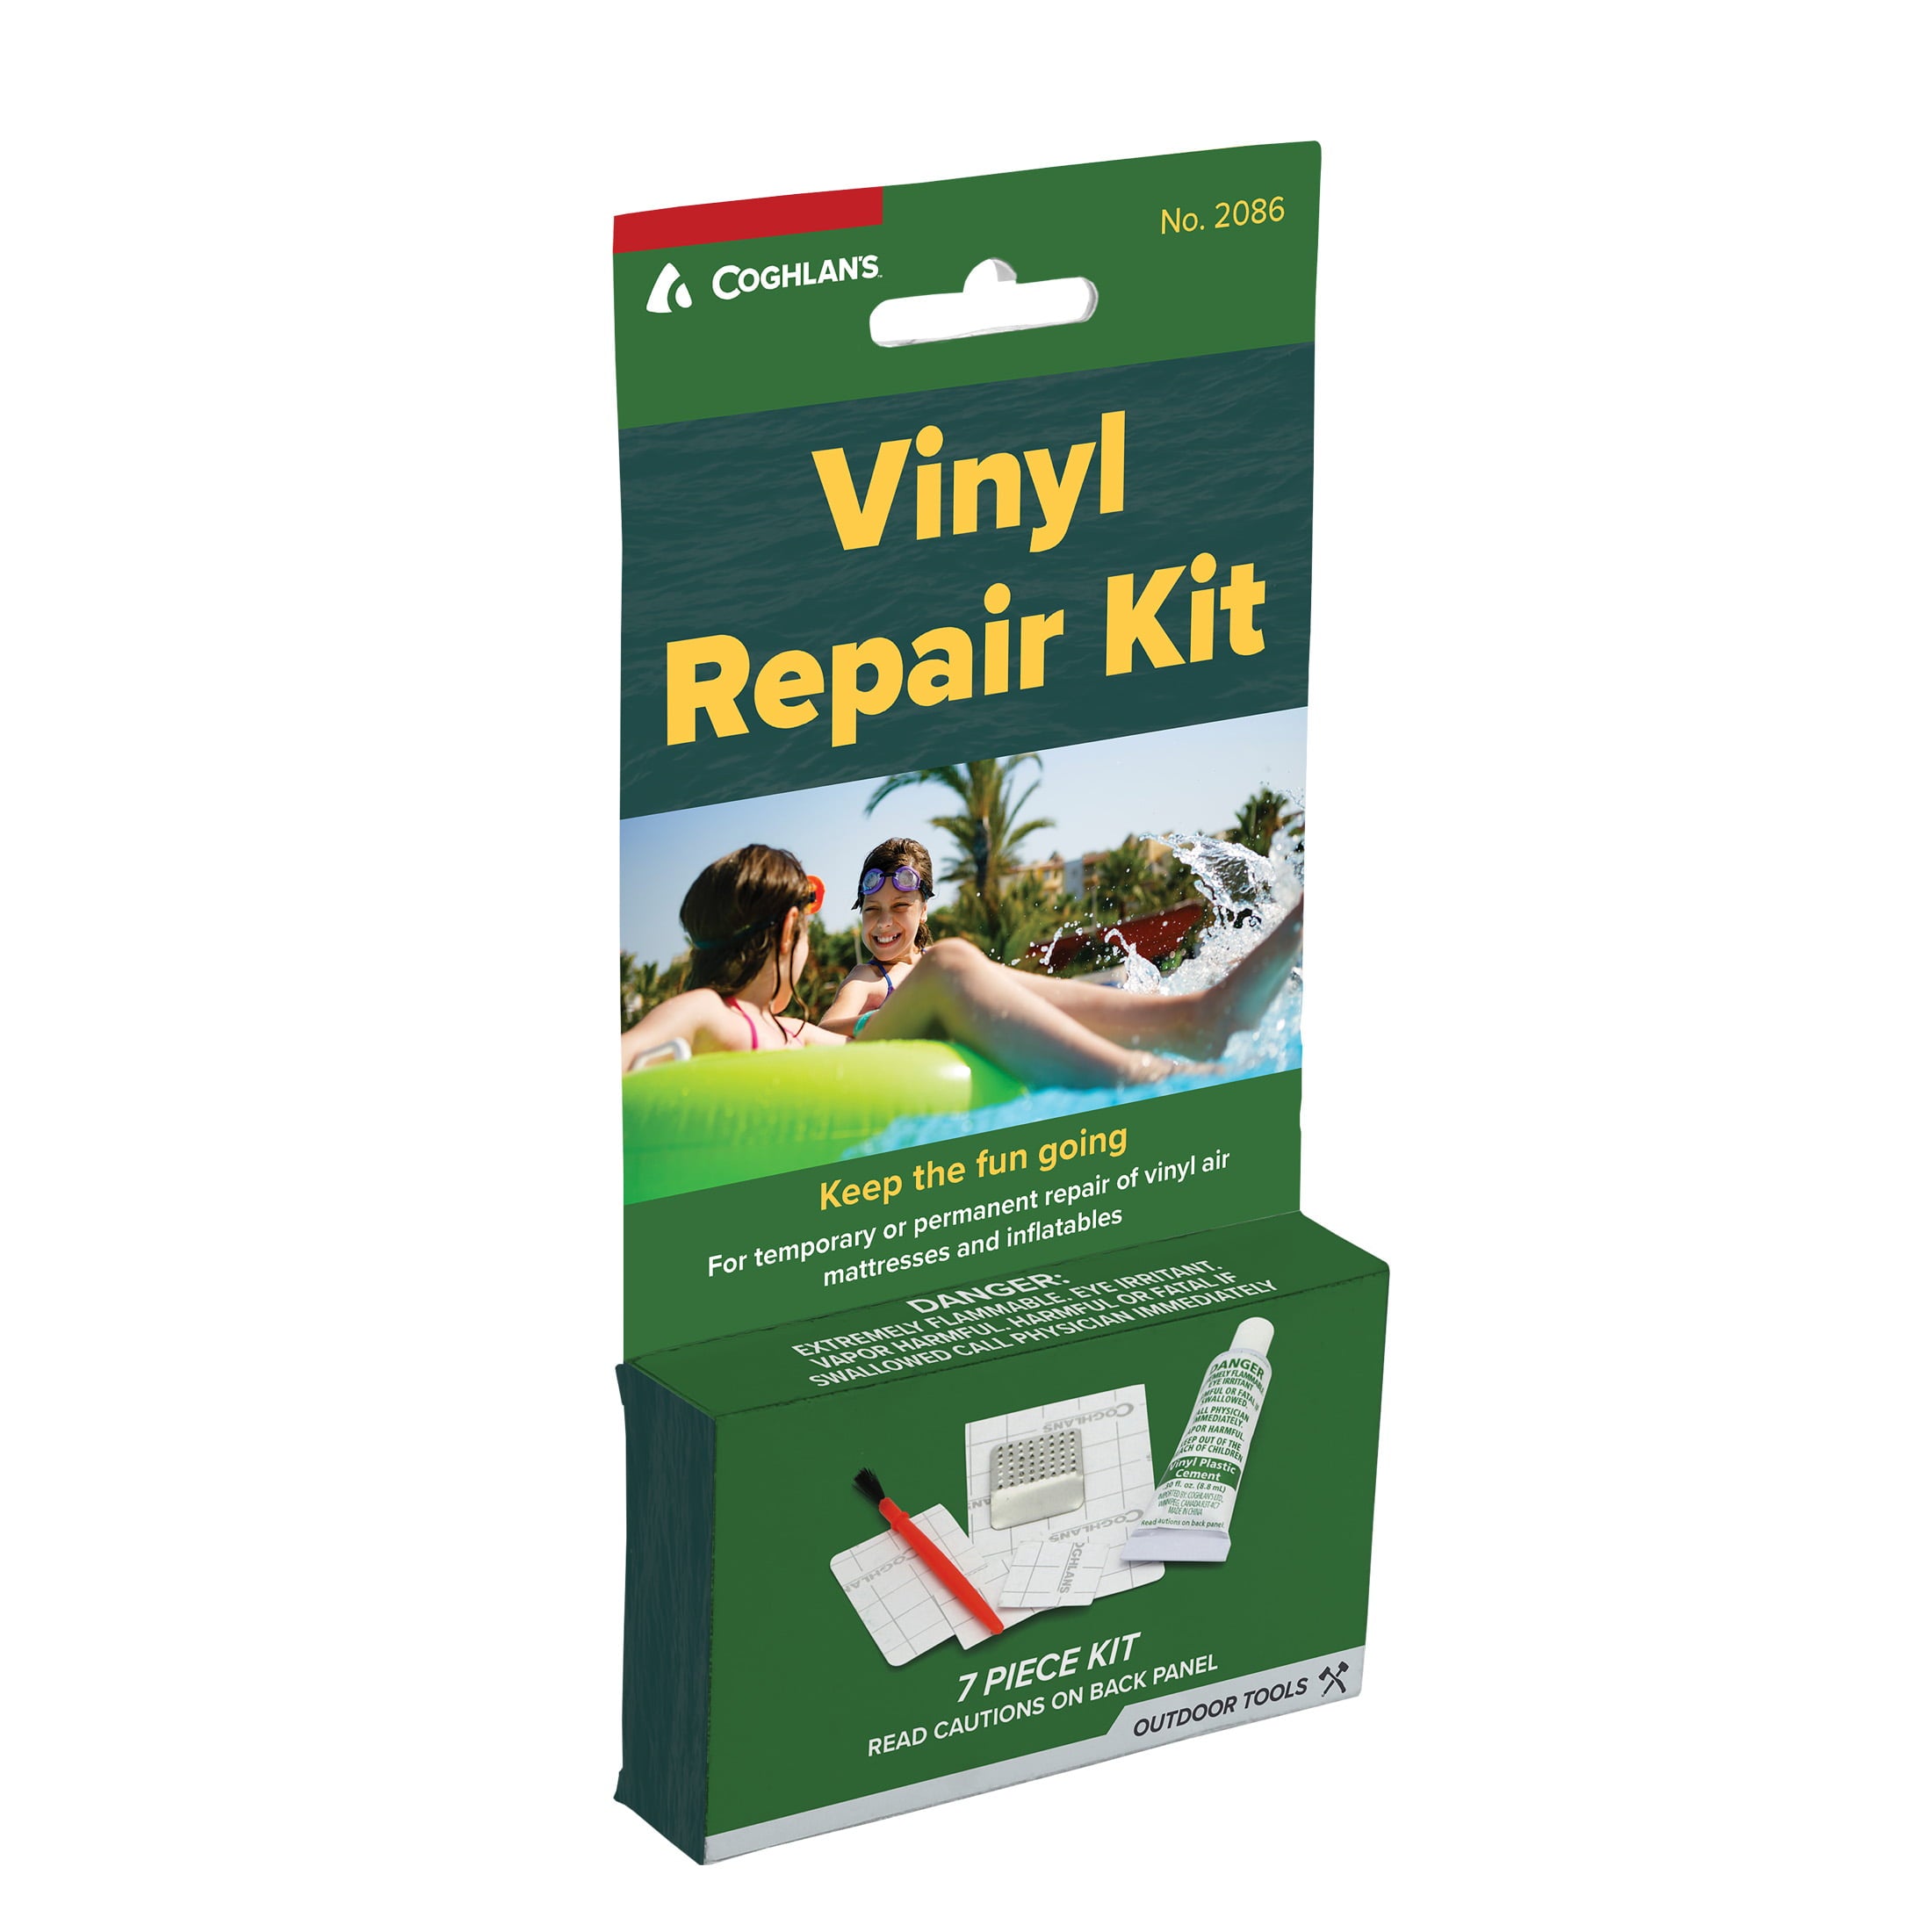 Coghlan's Vinyl Repair Kit for Vinyl Air Mattresses and Inflatables, 9 Pack